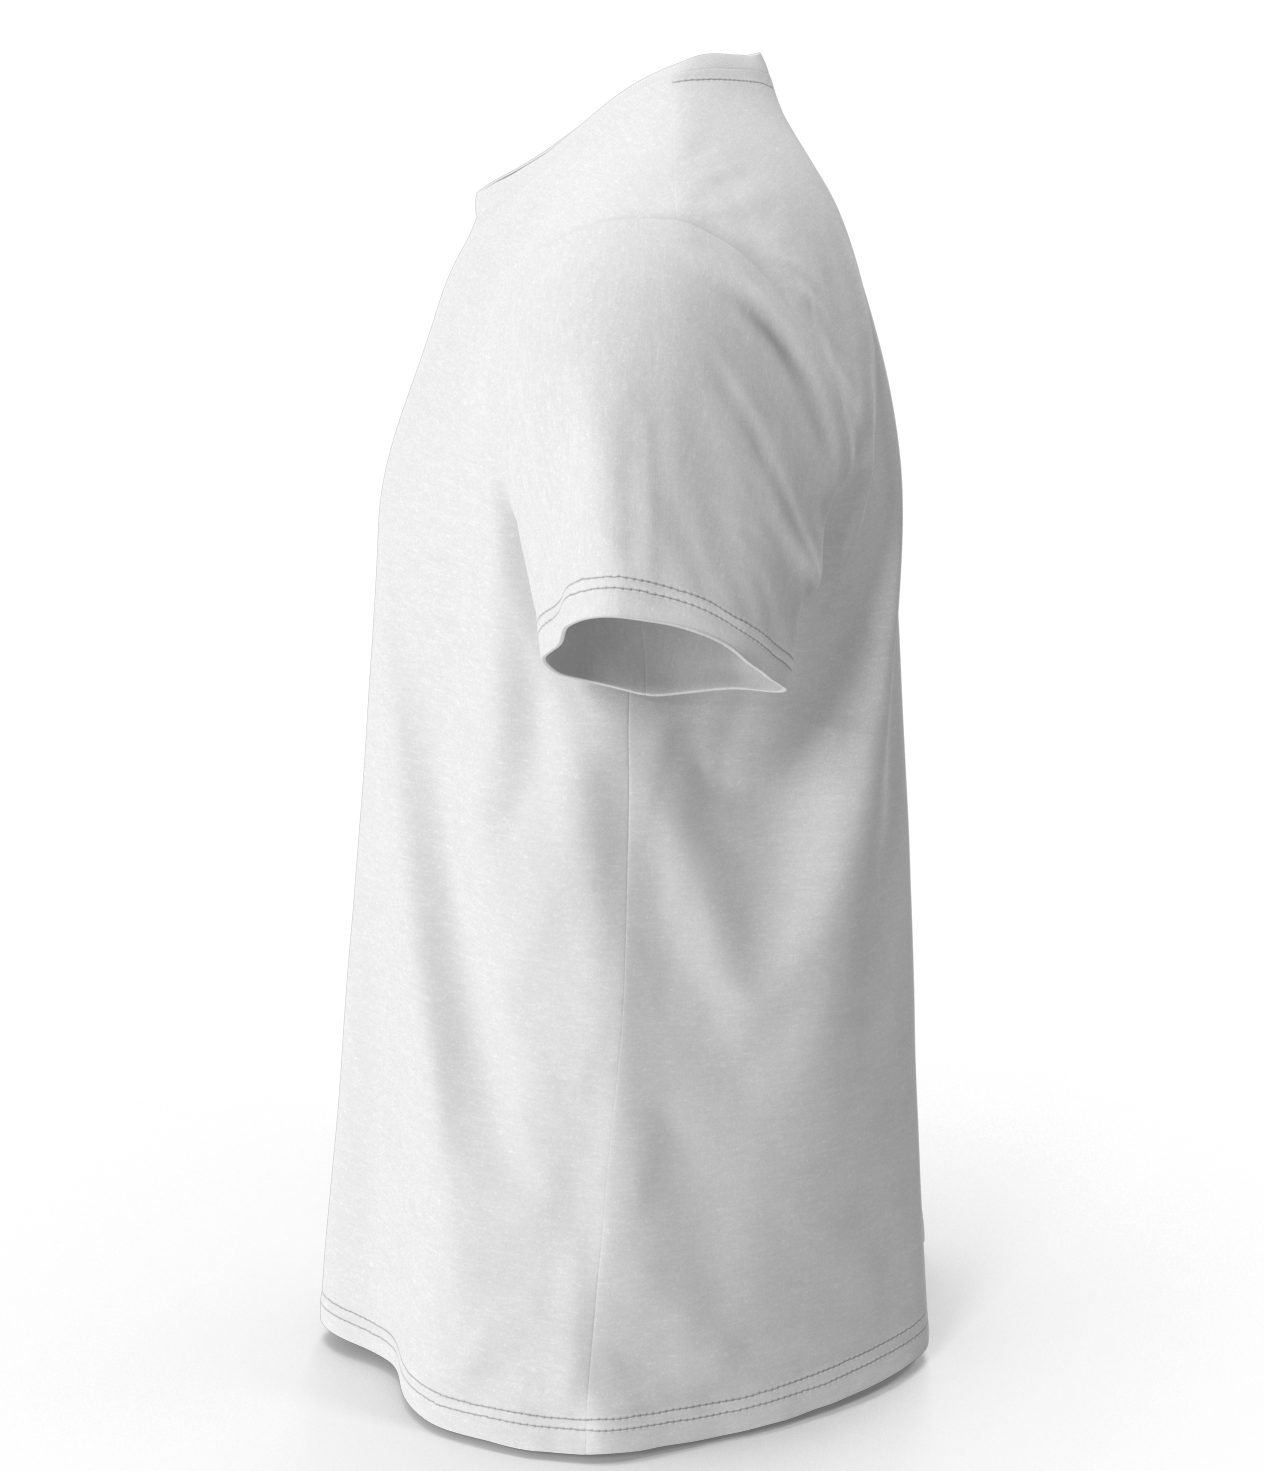 White color 100% Soft Cotton Unisex T-shirt